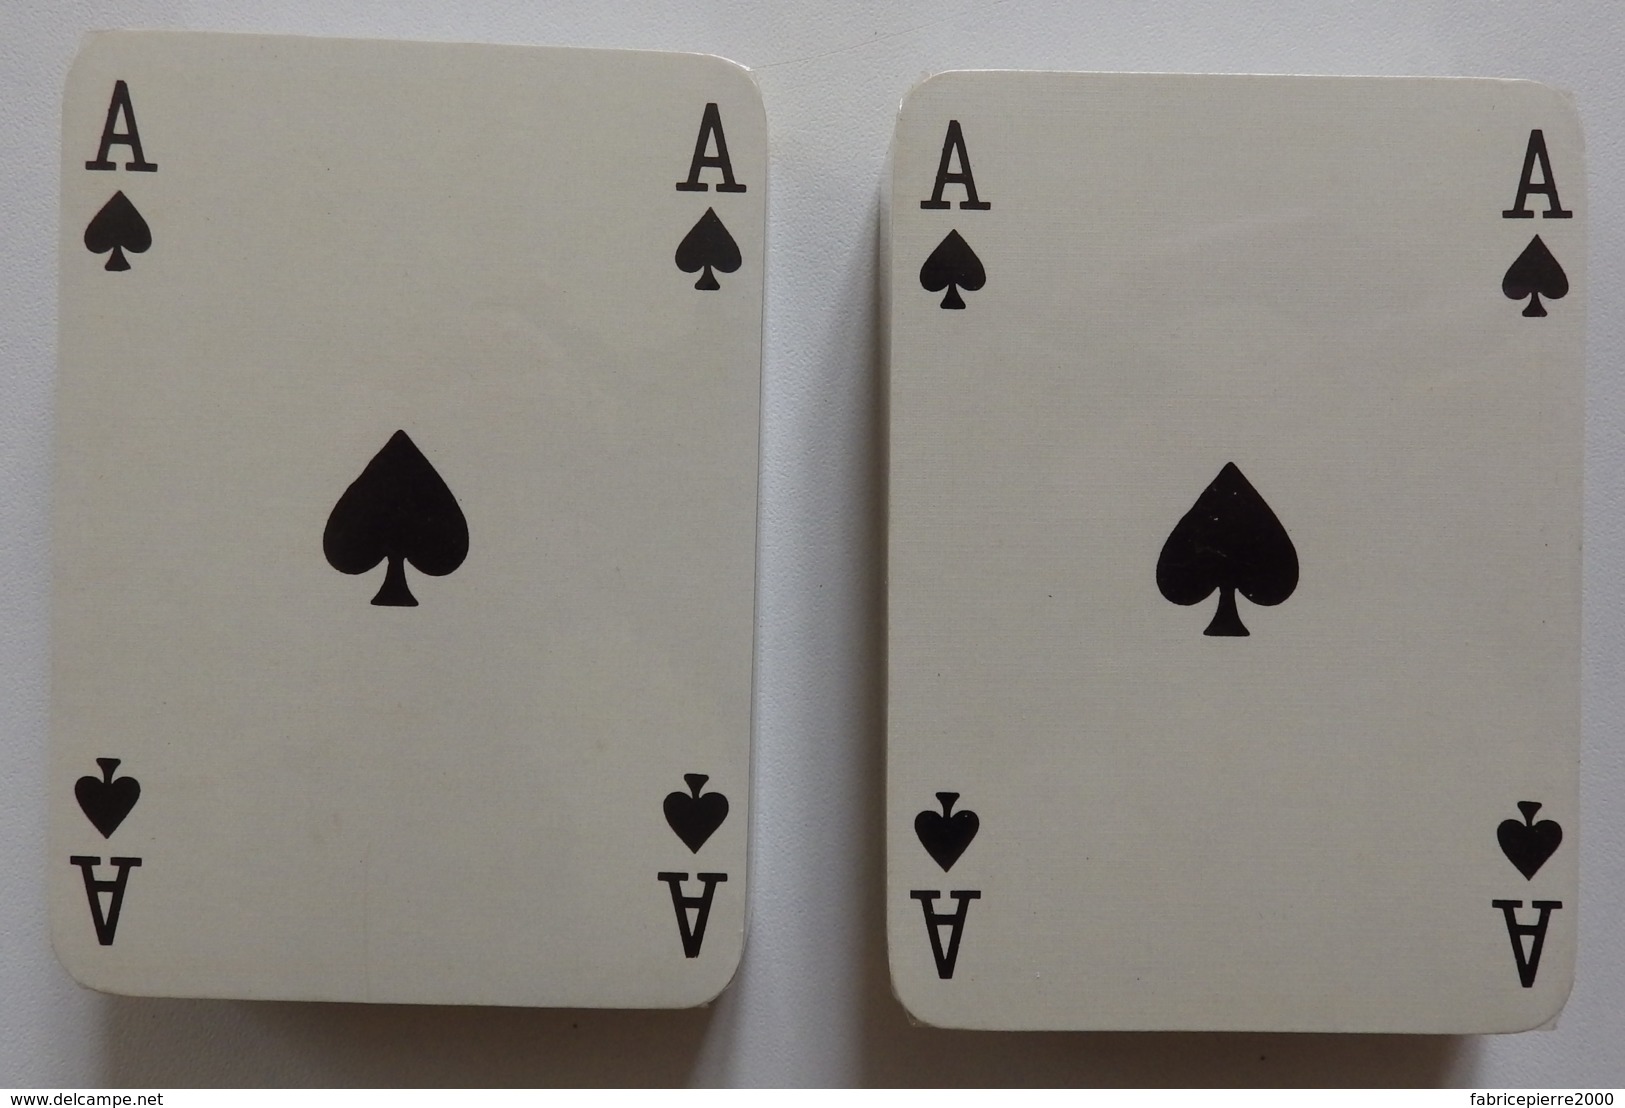 Roquefort SOCIETE - 2 Jeux De 54 Cartes Dans Leur étui - Etat Neuf - 54 Cards